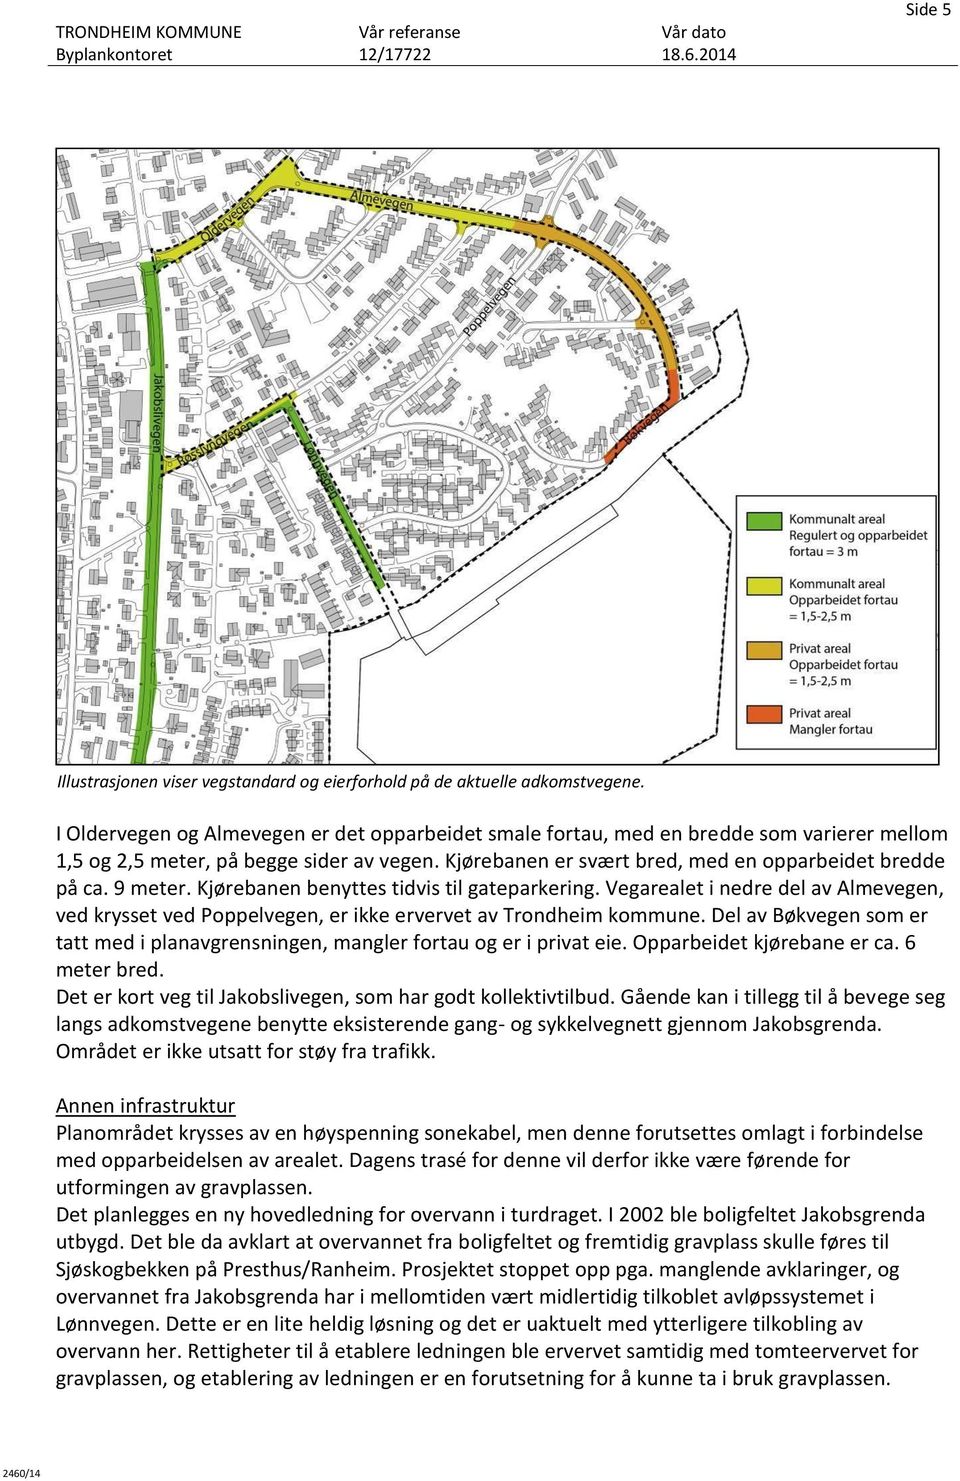 9 meter. Kjørebanen benyttes tidvis til gateparkering. Vegarealet i nedre del av Almevegen, ved krysset ved Poppelvegen, er ikke ervervet av Trondheim kommune.